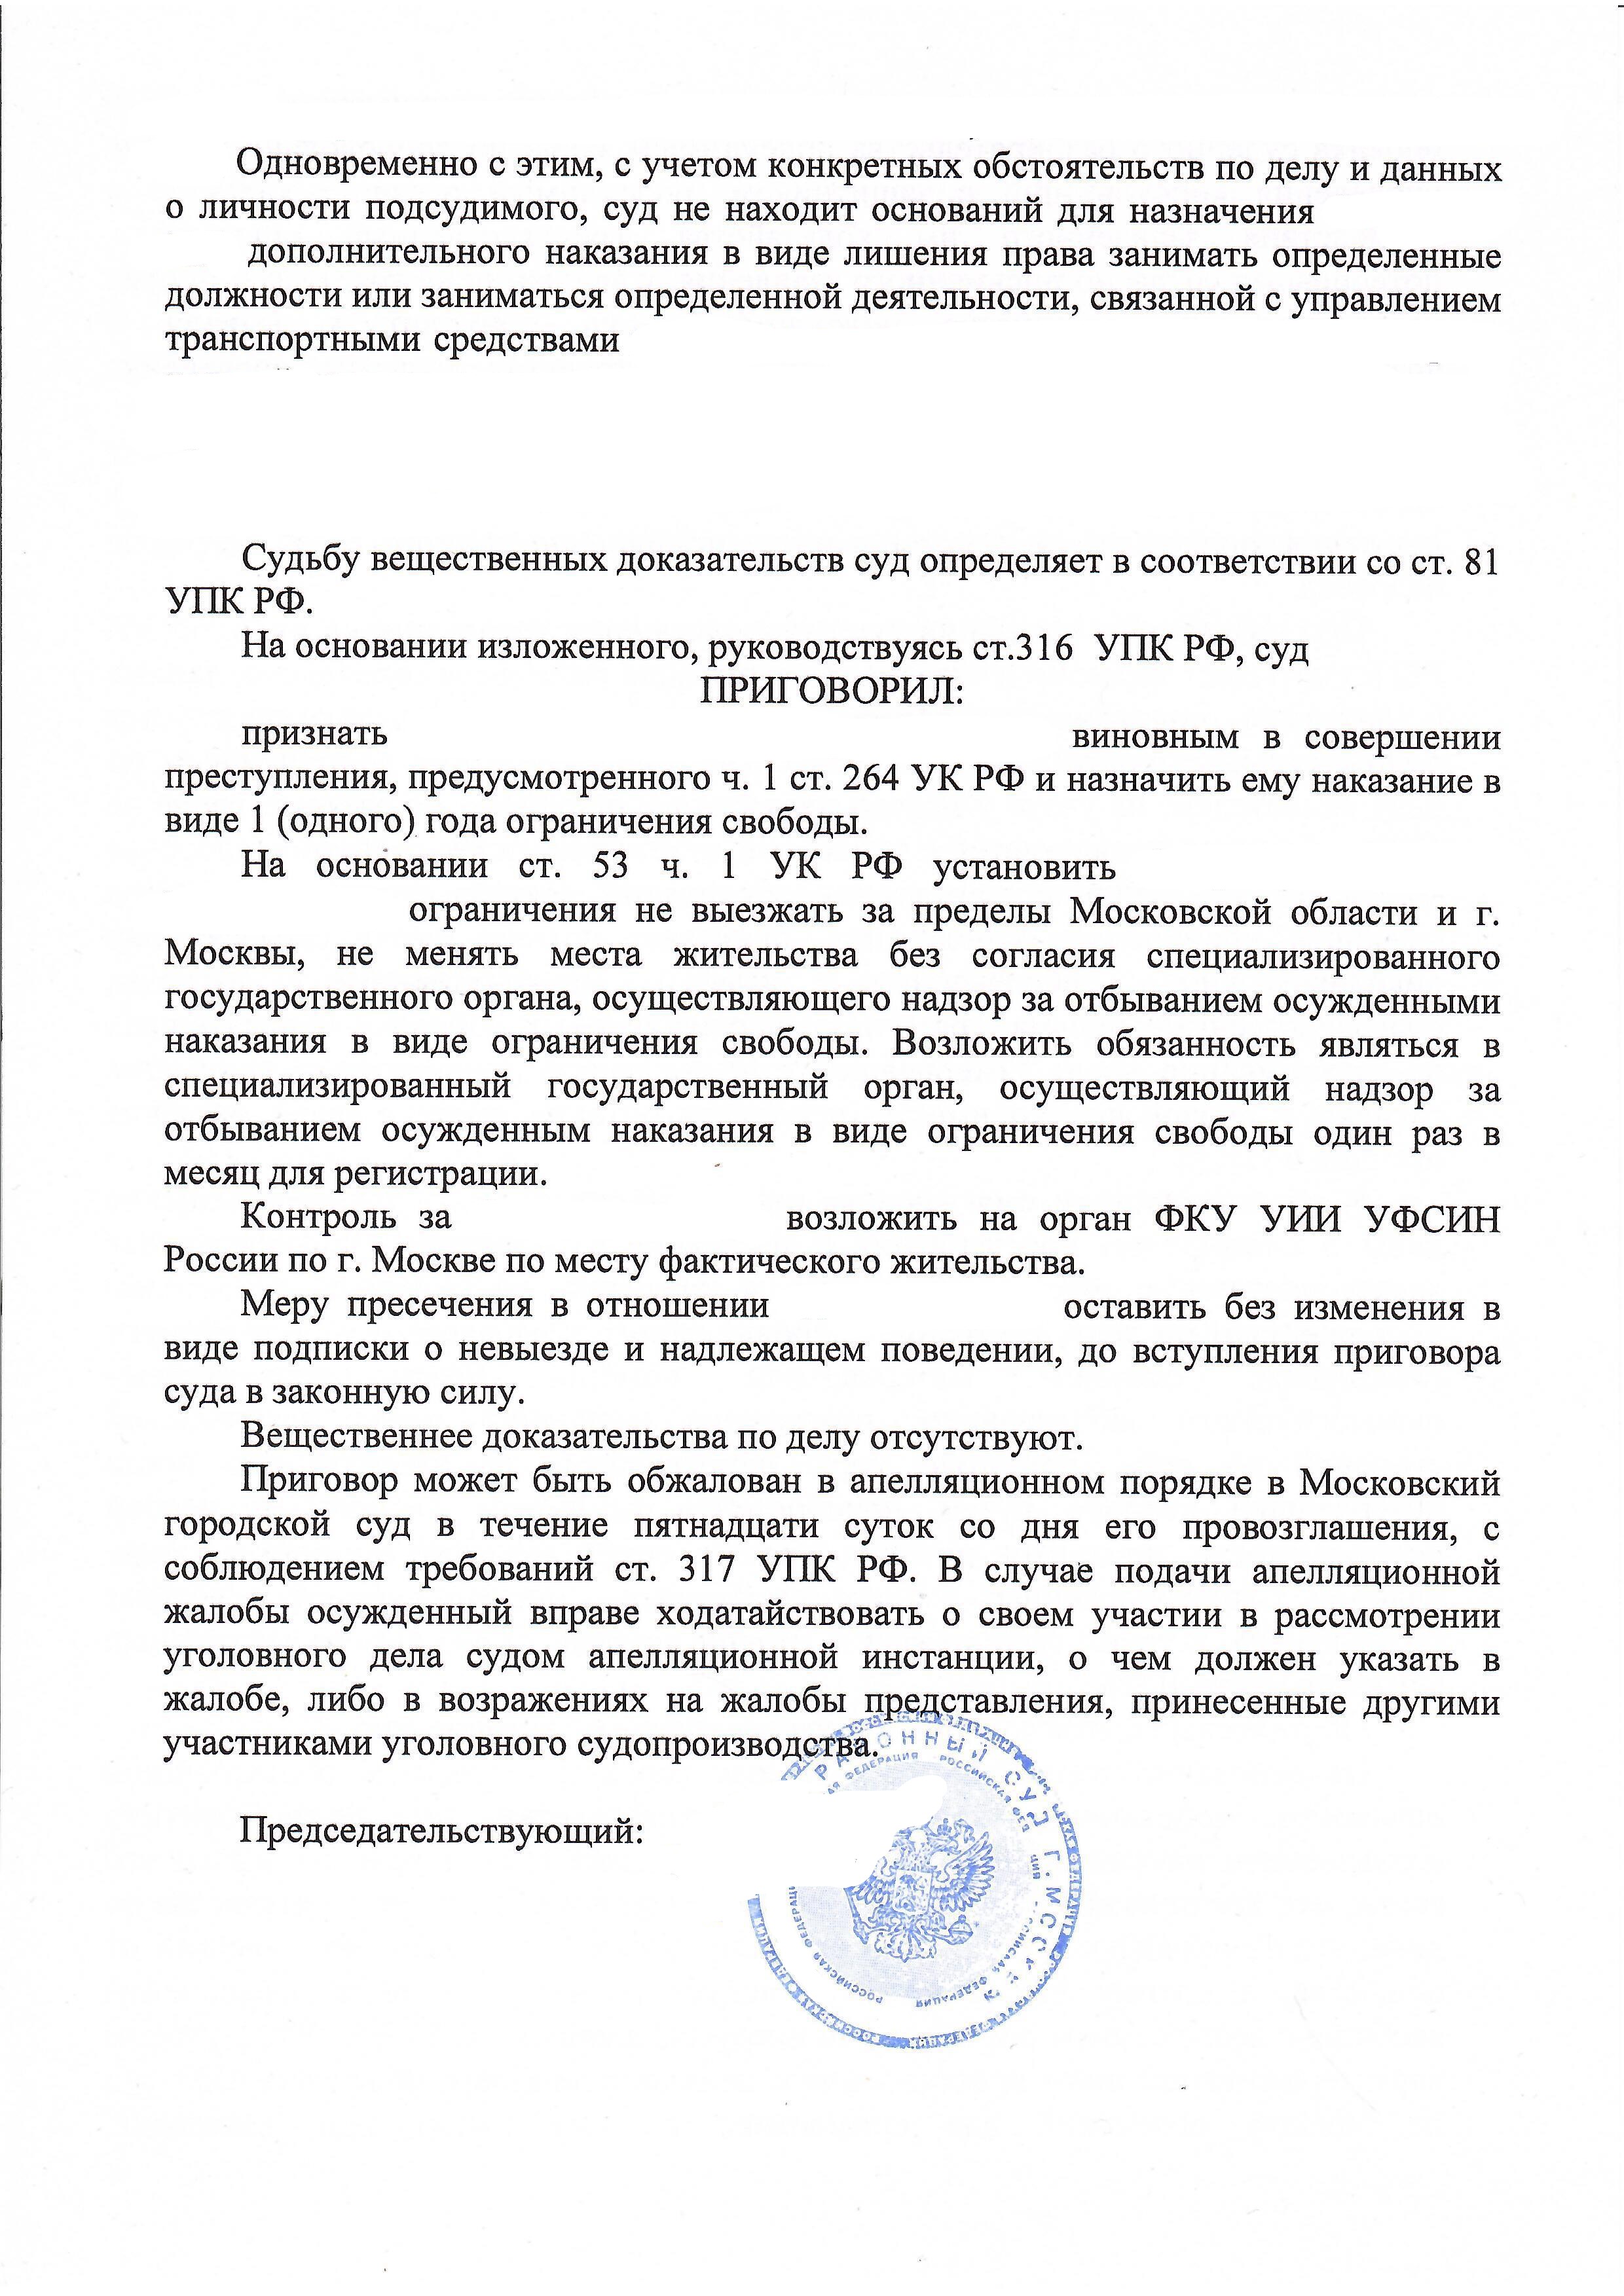 Приговор по статье 264 часть 1 УК РФ - Минимальное наказание с сохранением права на управление ТС